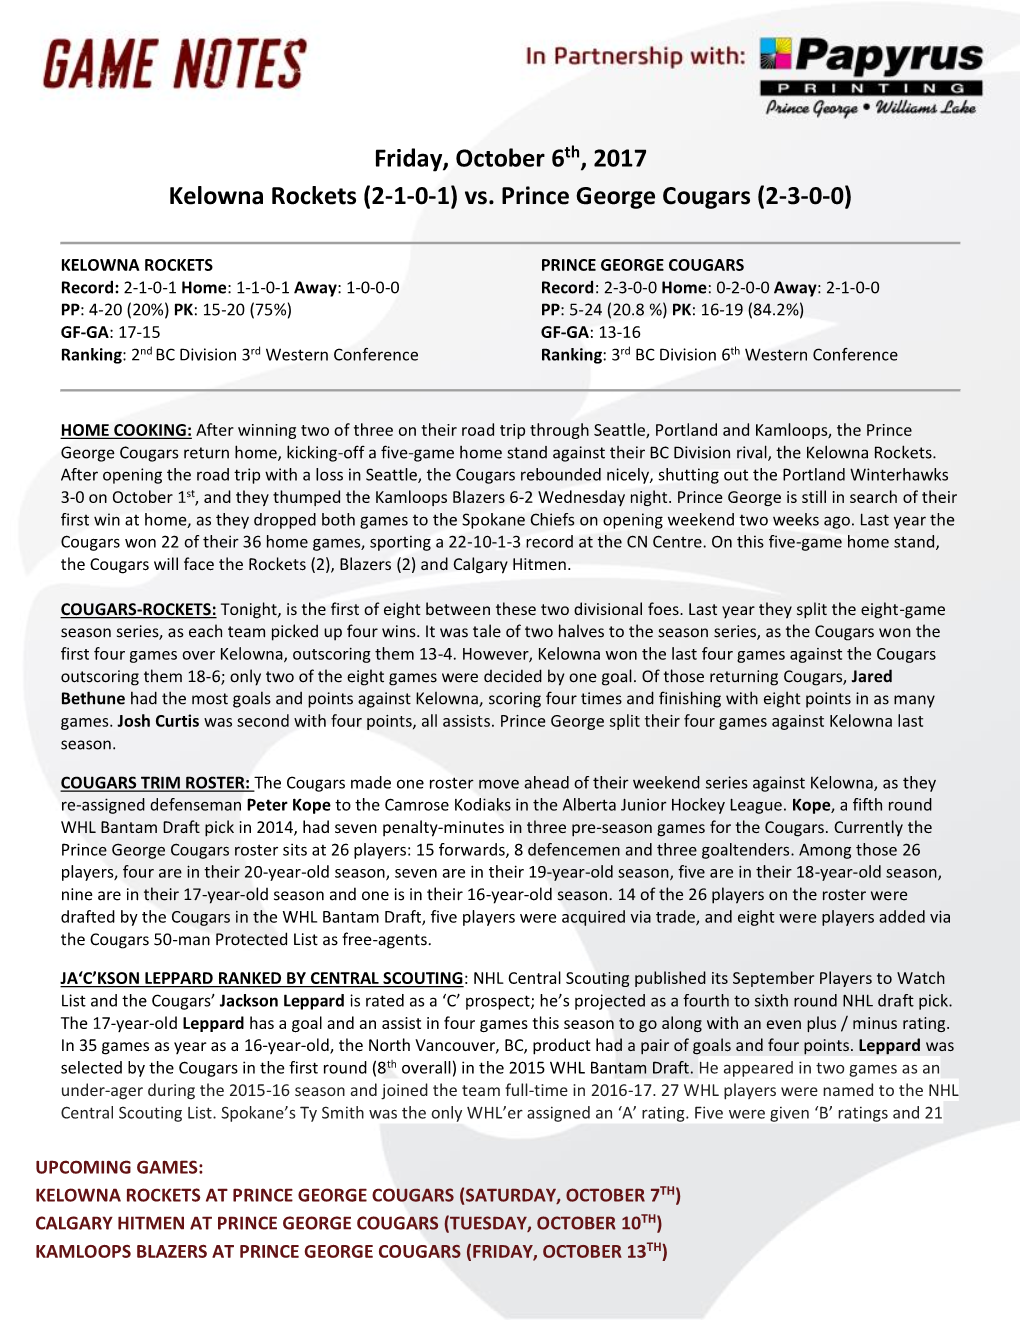 Friday, October 6Th, 2017 Kelowna Rockets (2-1-0-1) Vs. Prince George Cougars (2-3-0-0)